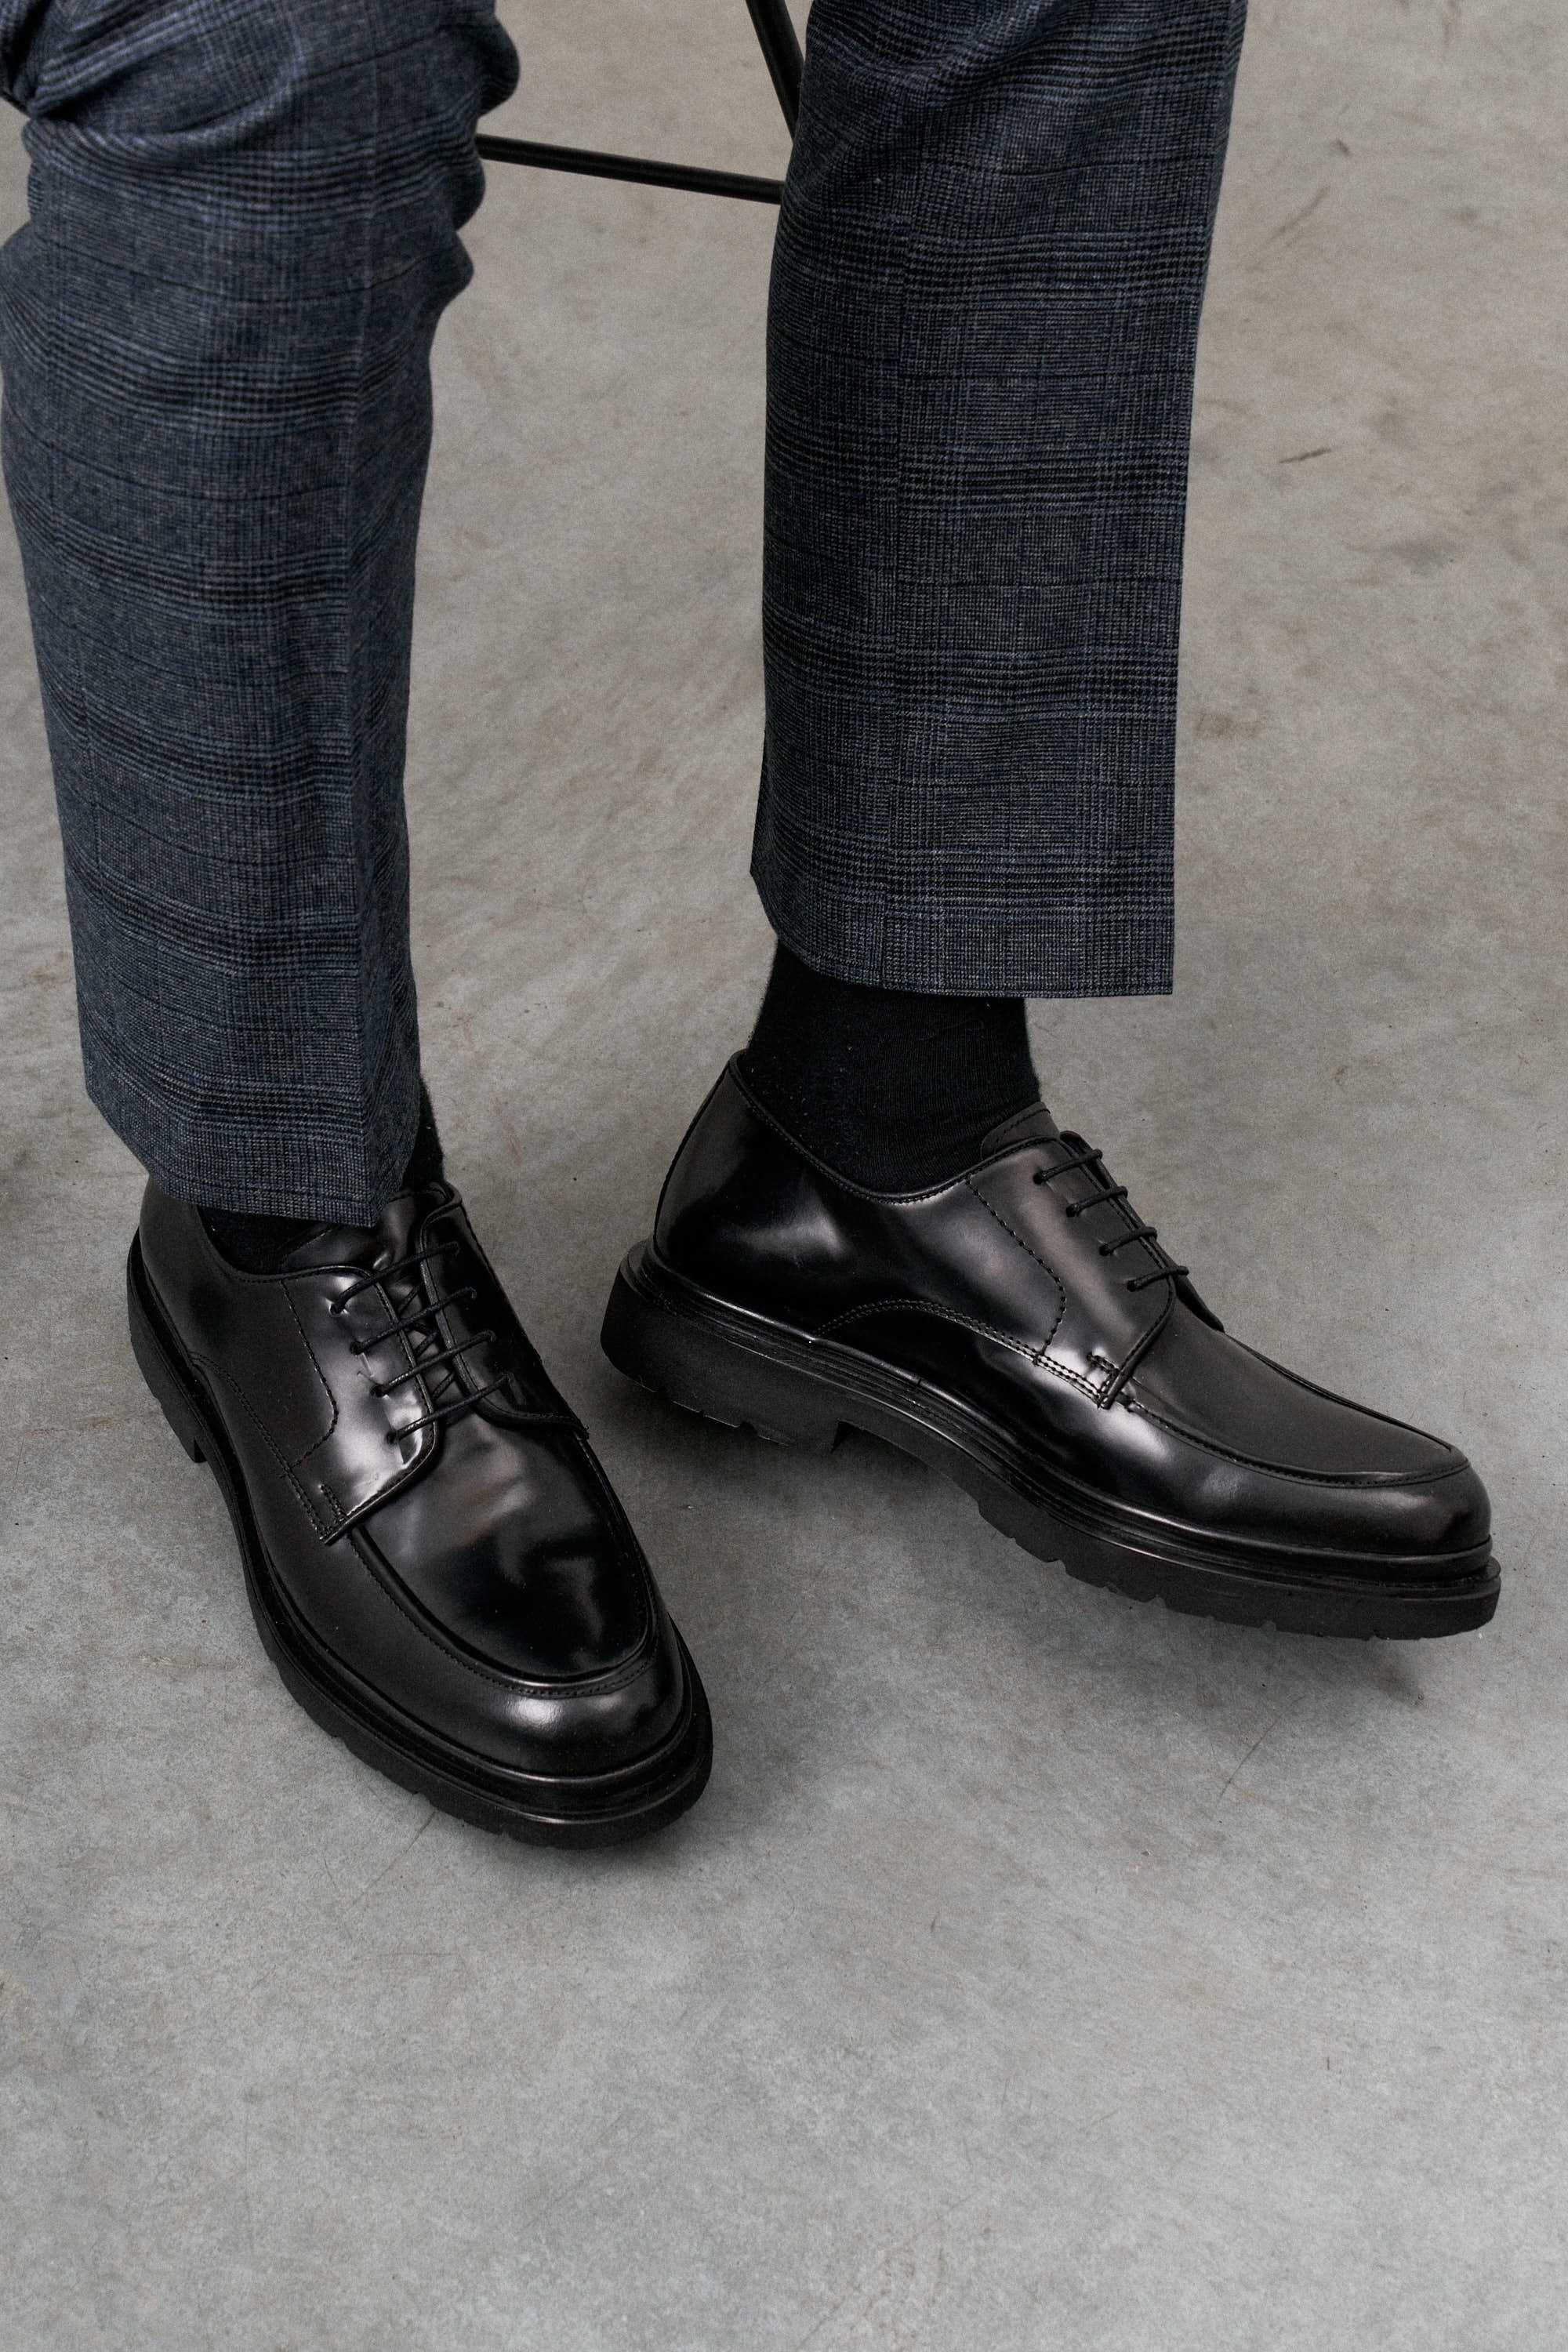 Туфли мужские дерби черный глянец с полукруговым швом на мыске, на высокой подошве